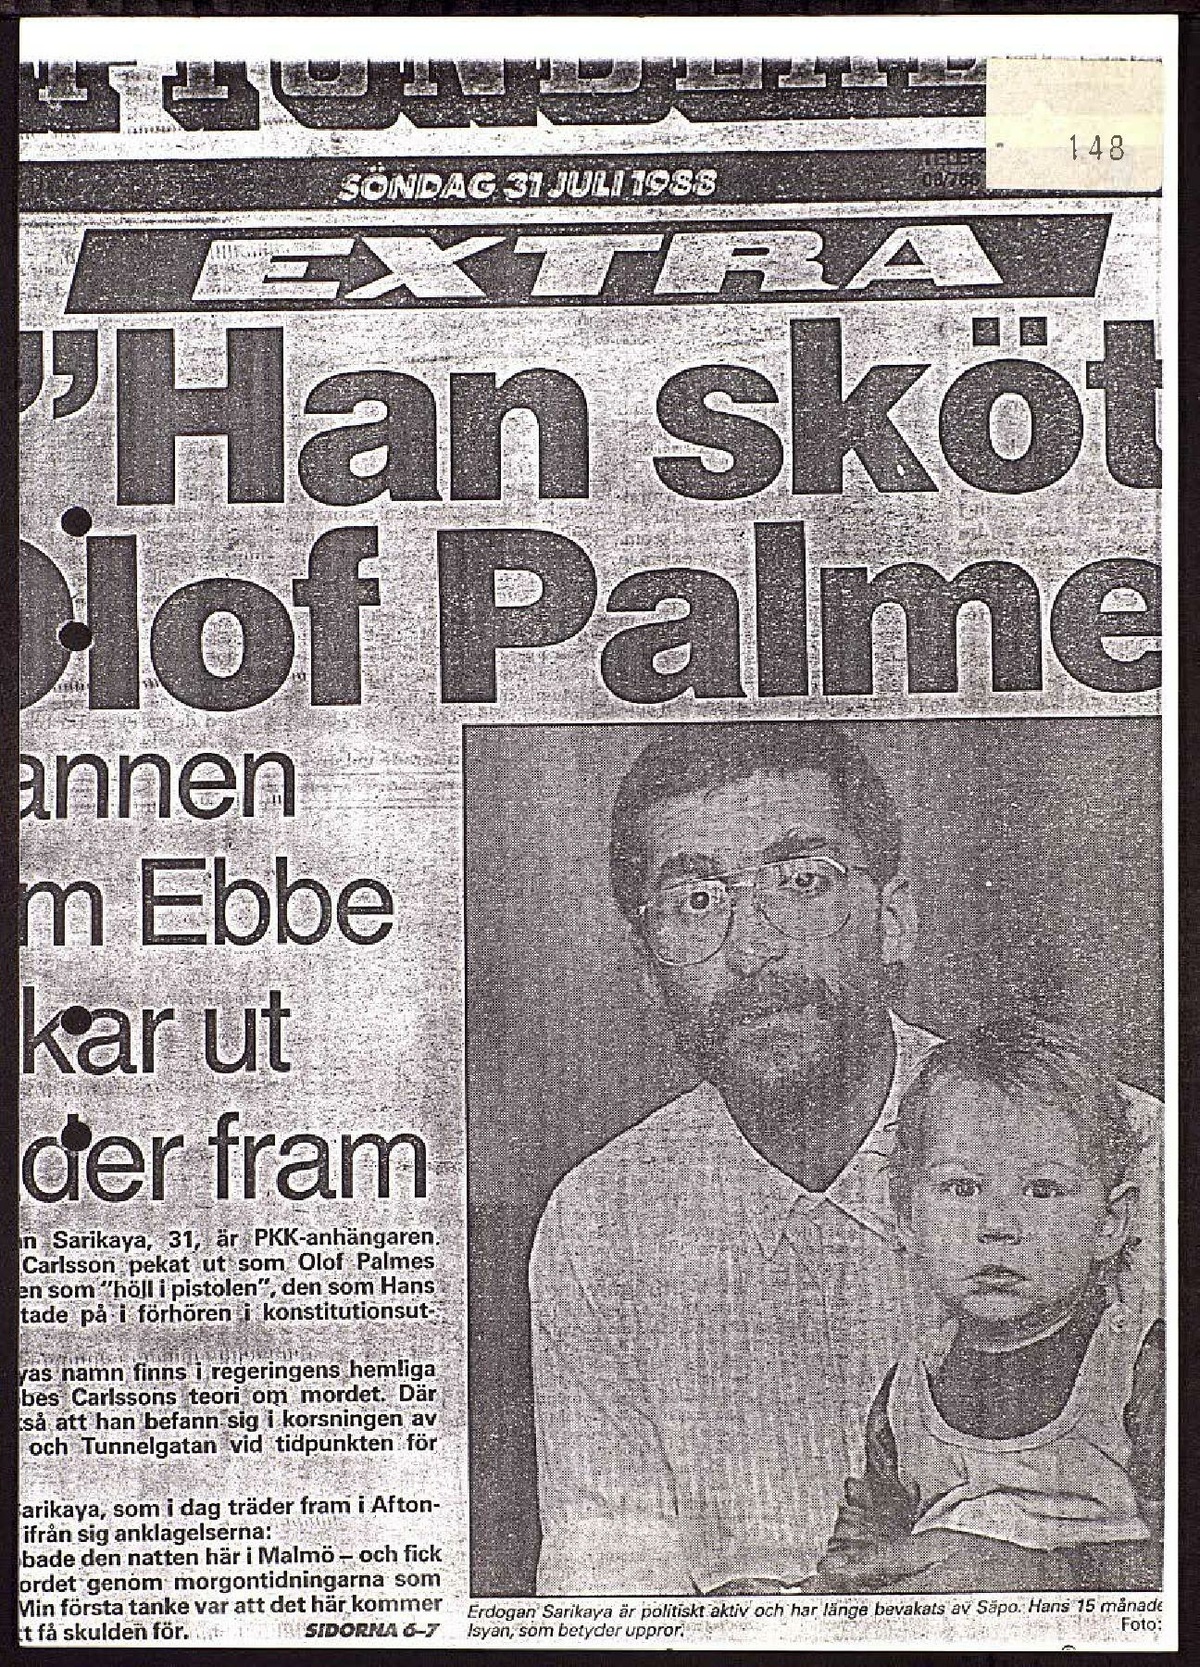 Pol-1988-08-17 1410 T2-00-E Förhör om bild med Mårten Palme.pdf